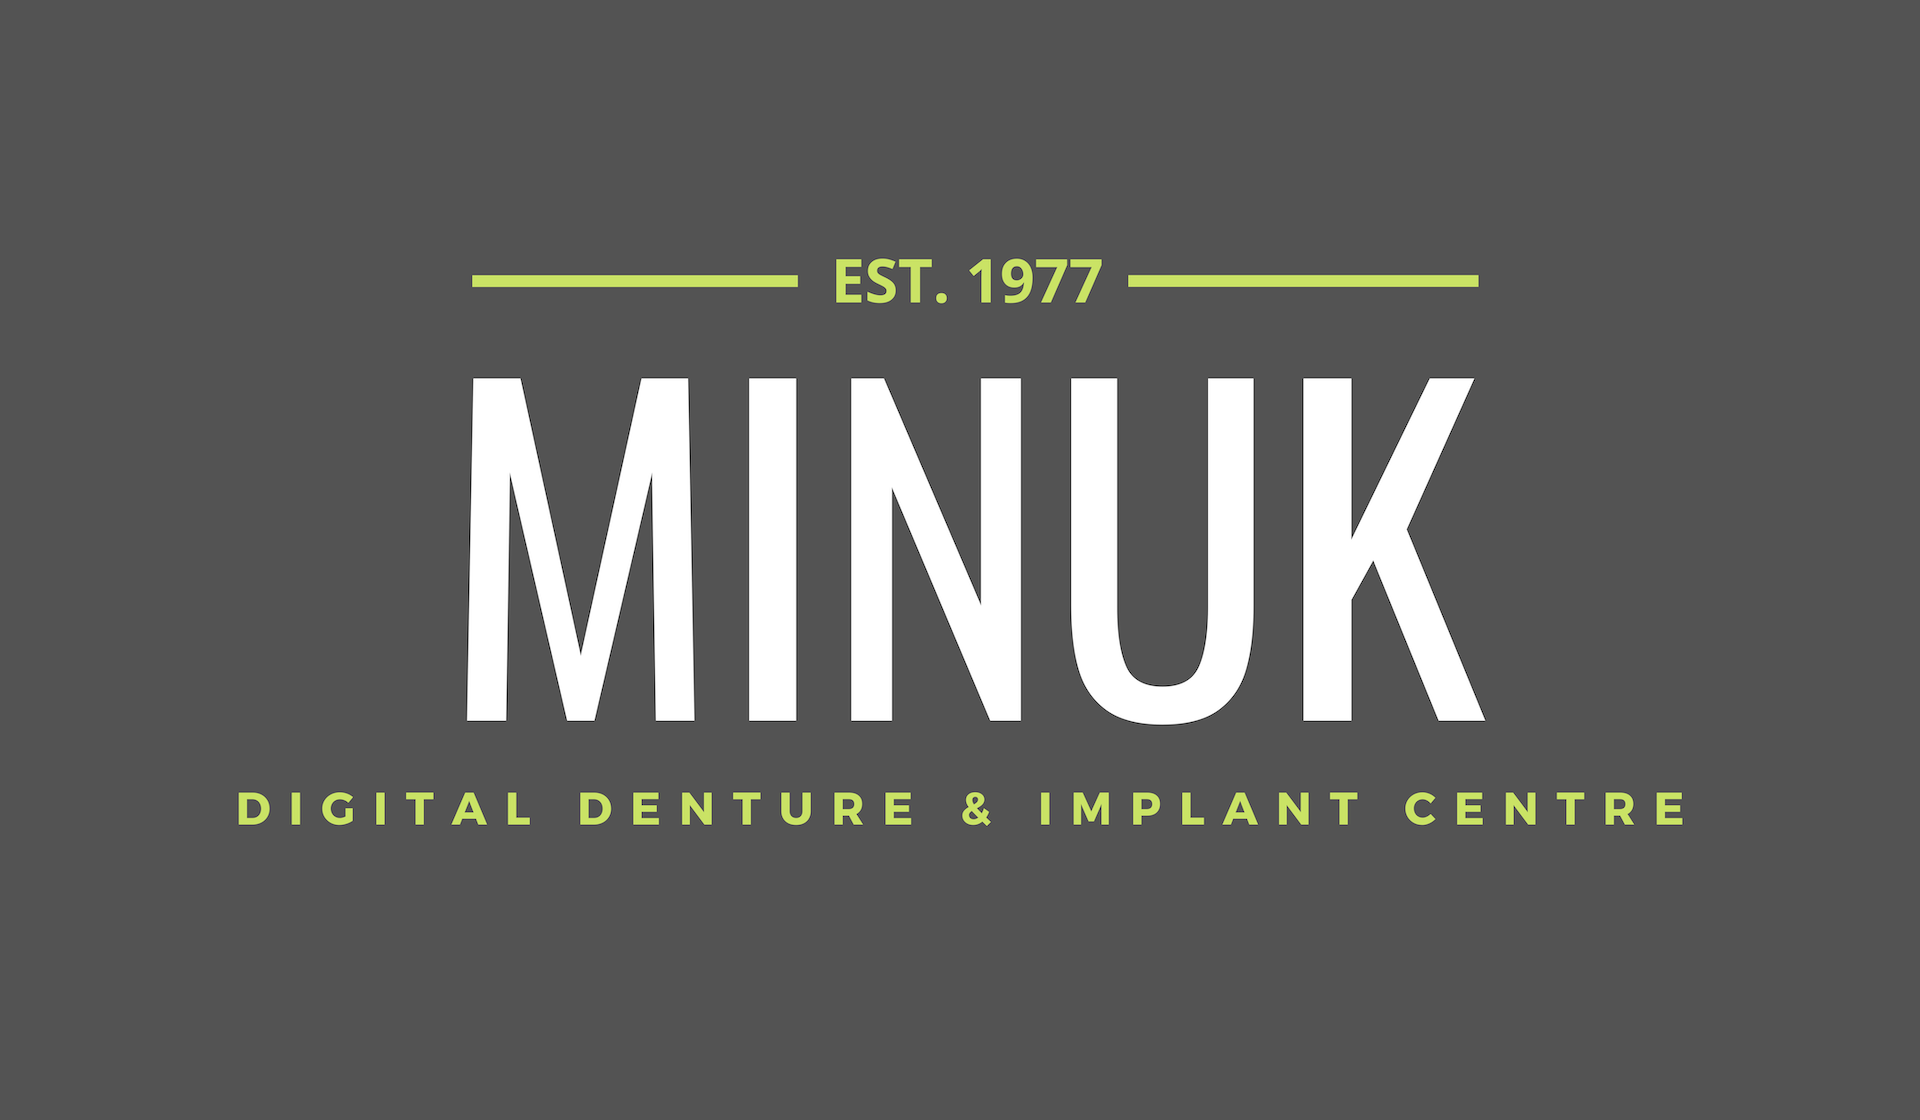 Dentures on Implants From This Winnipeg Denture Clinic Make It Easier To Speak